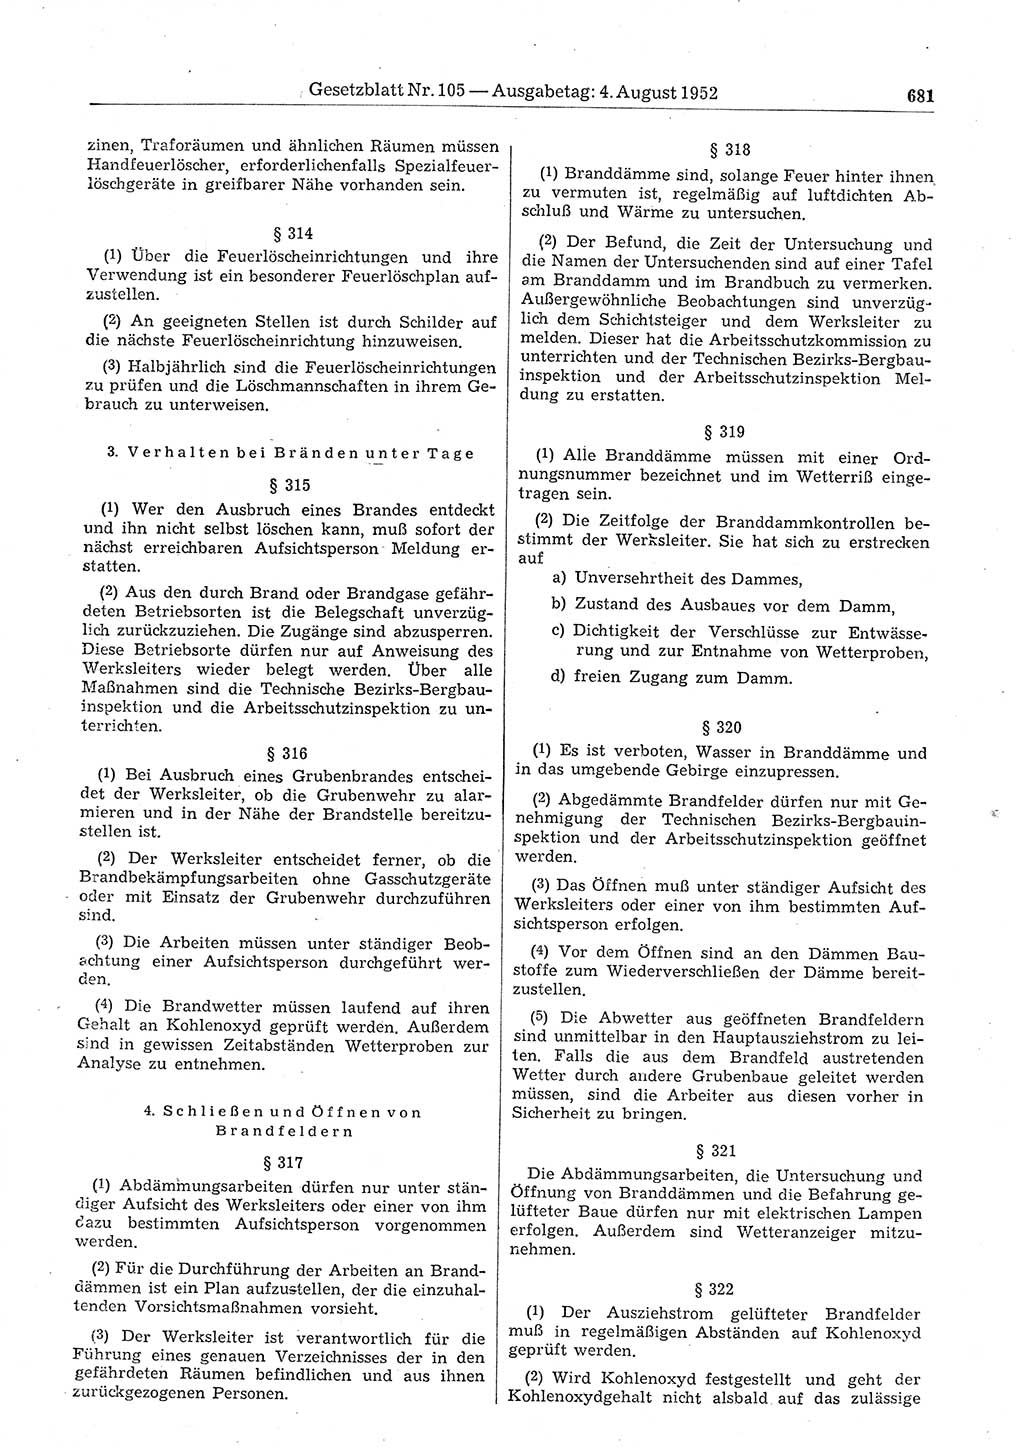 Gesetzblatt (GBl.) der Deutschen Demokratischen Republik (DDR) 1952, Seite 681 (GBl. DDR 1952, S. 681)